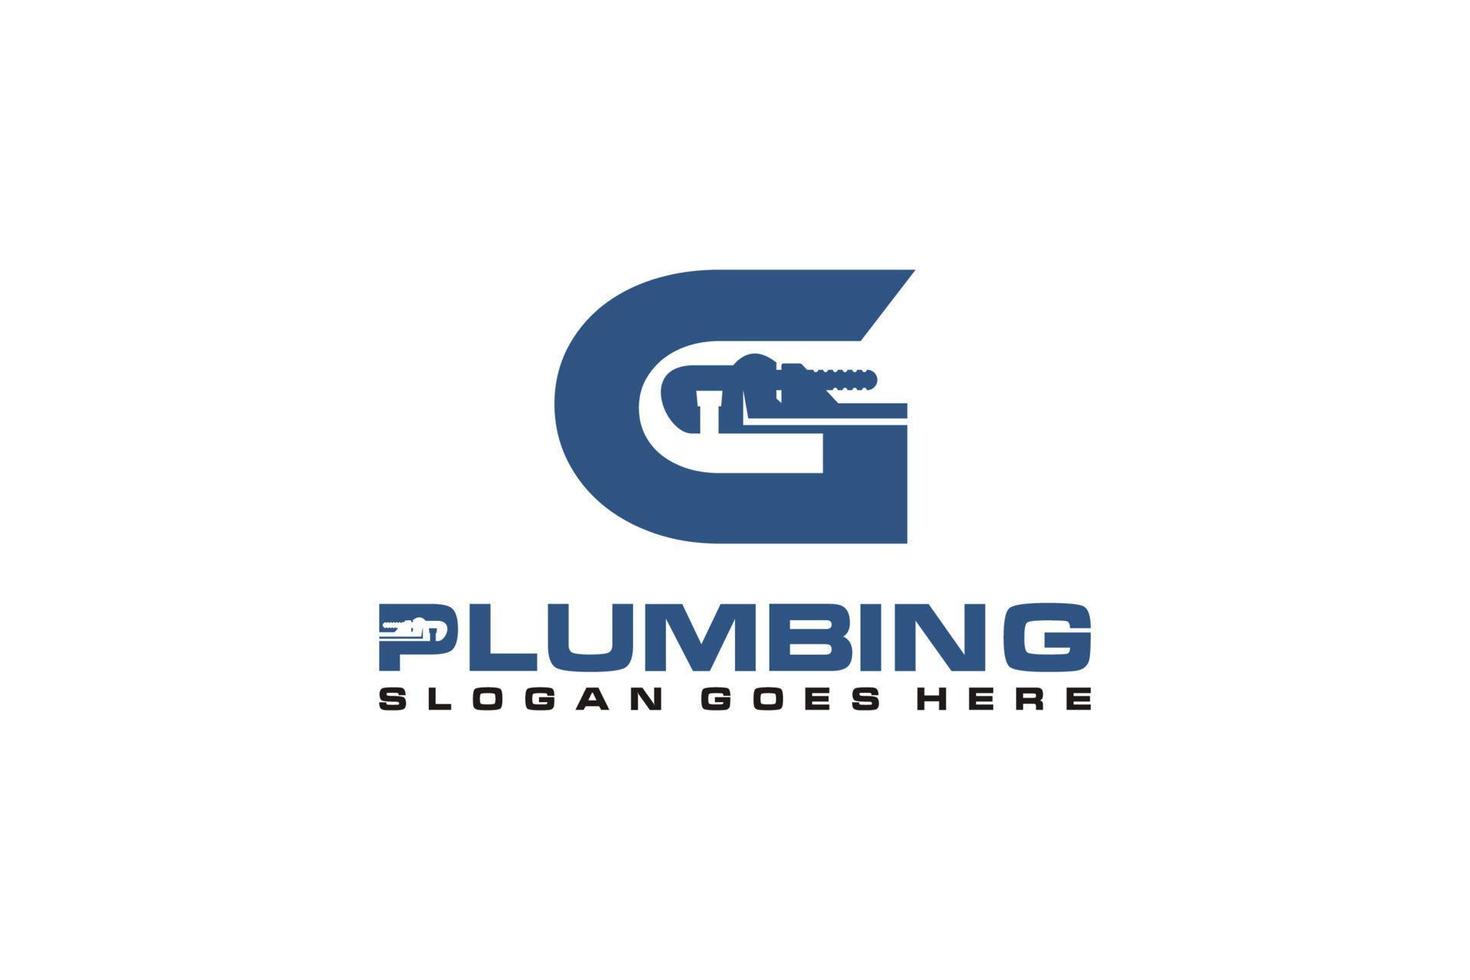 g initial pour le modèle de logo de service de plomberie, vecteur d'icône de logo de service d'eau.